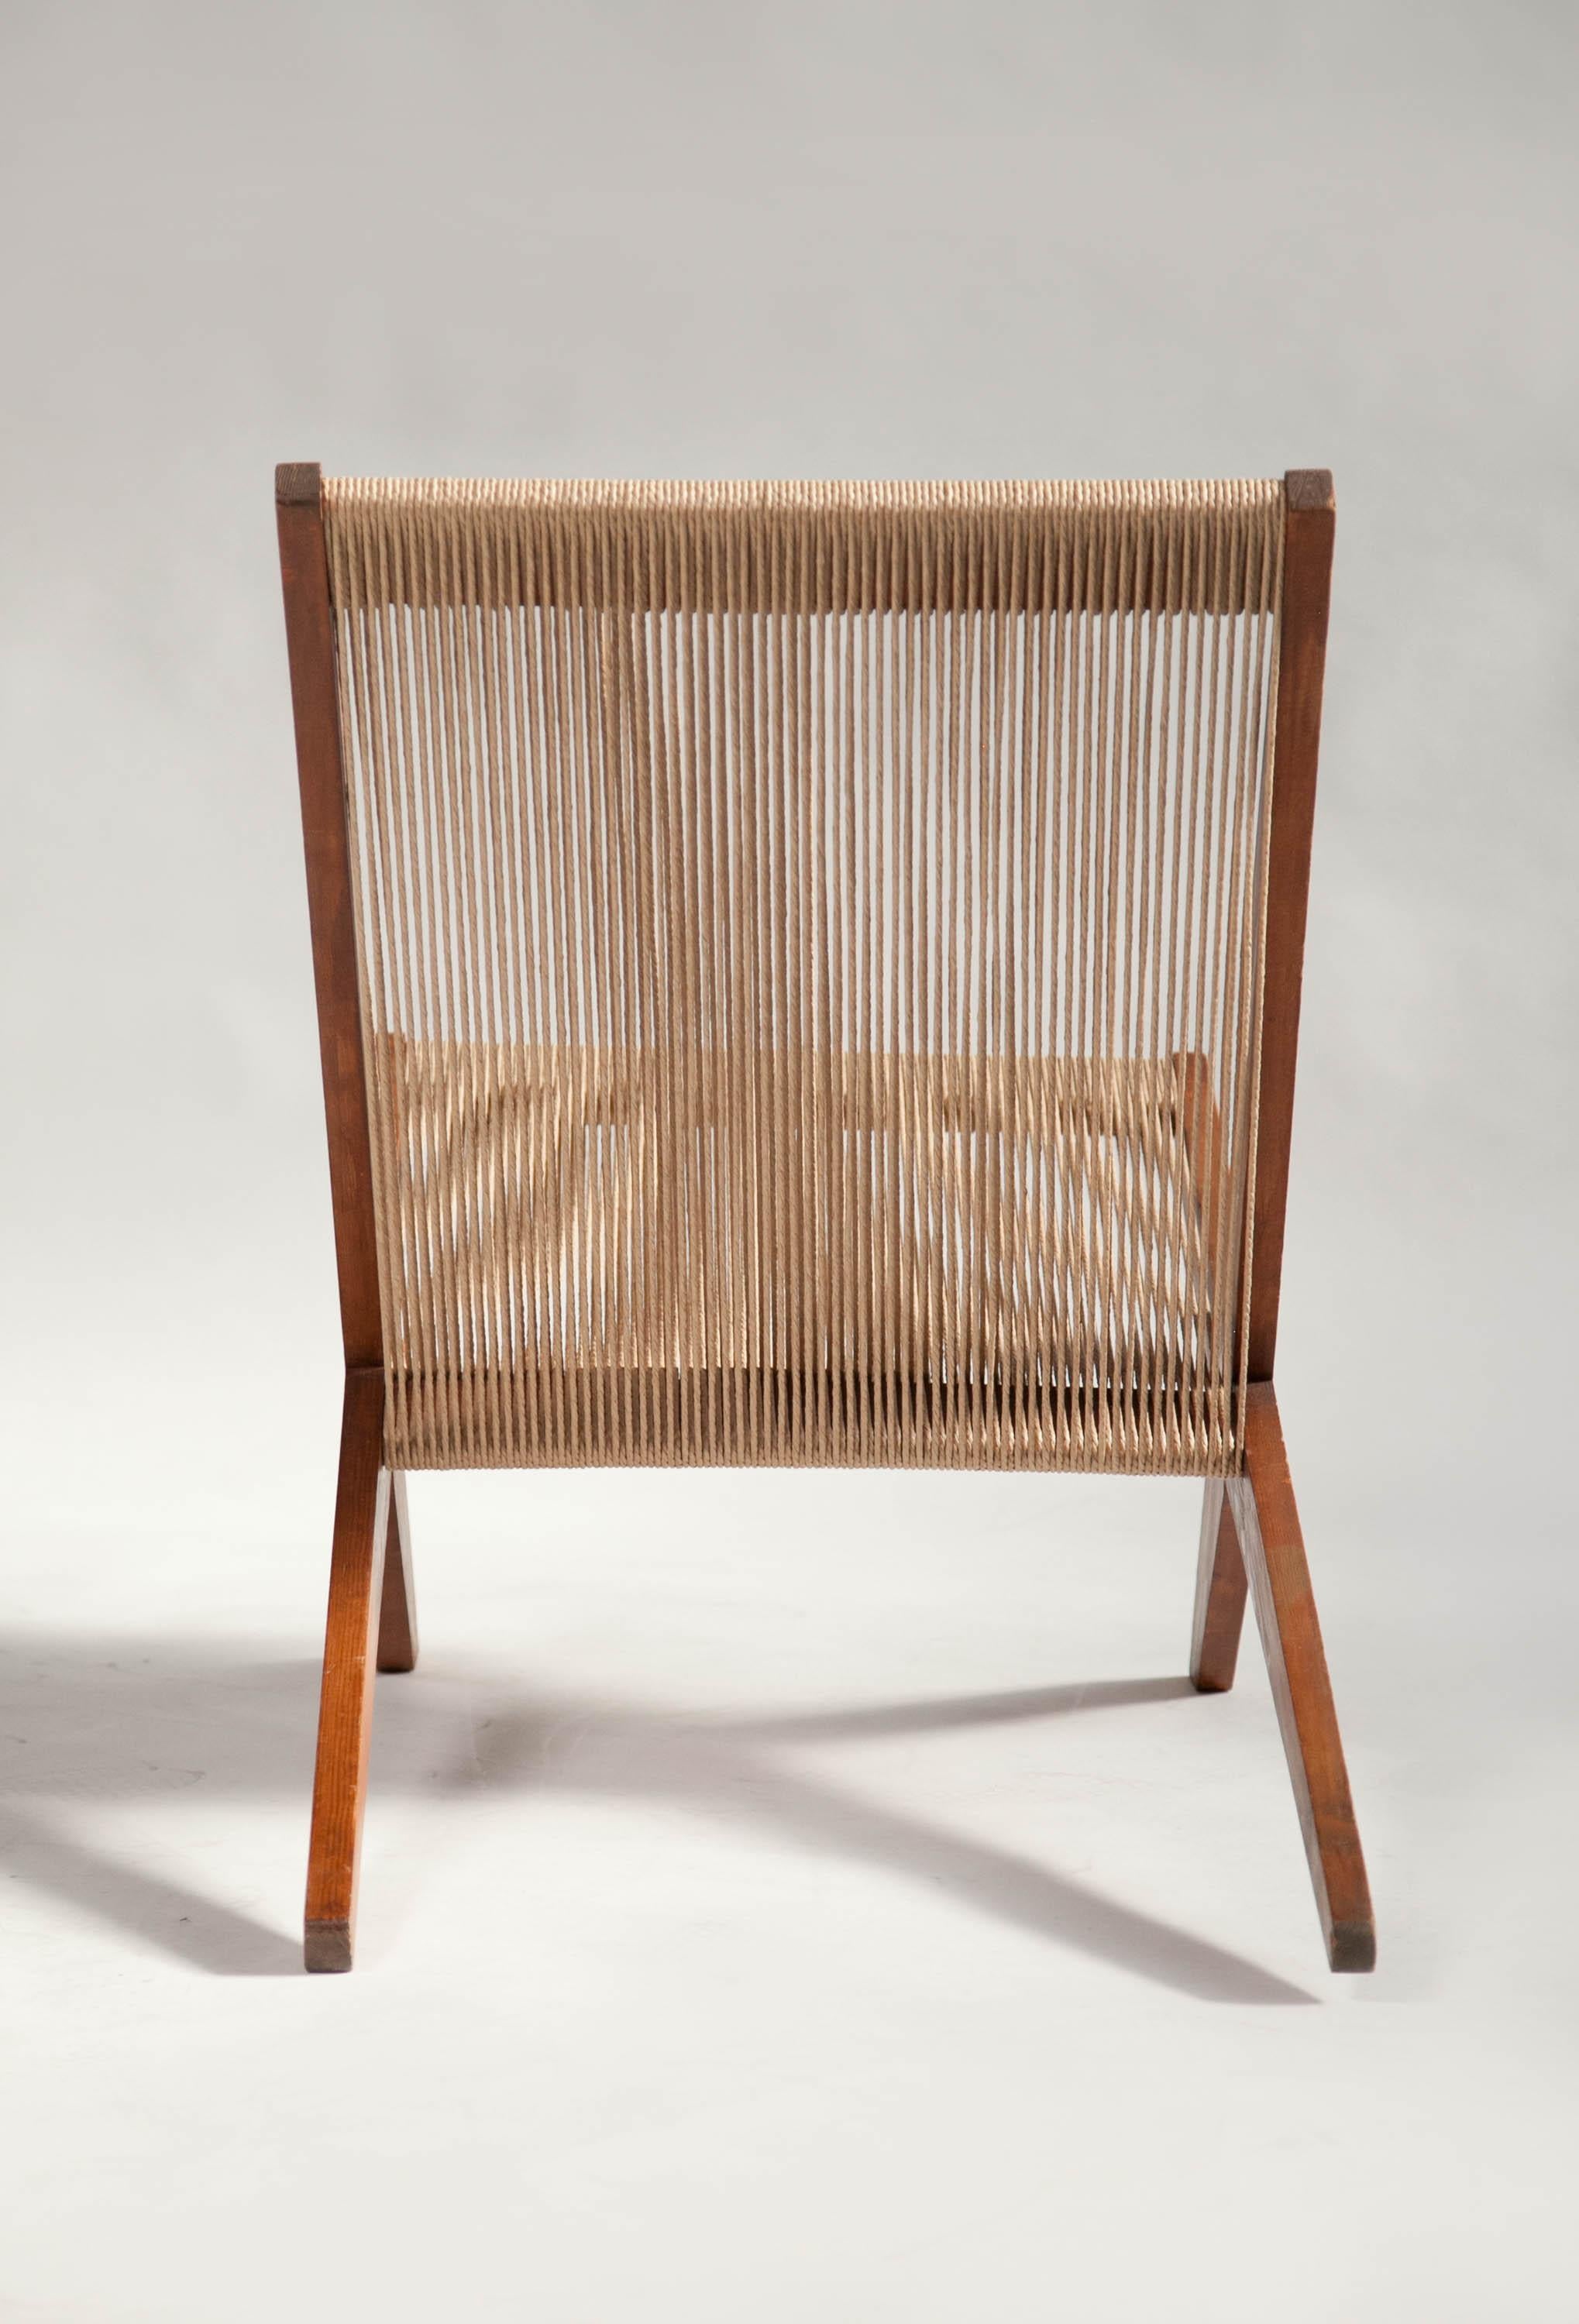 Rope Chair in Pine, Attributed to Poul Kjaerholm & Jørgen Høj, Denmark, 1960's For Sale 3